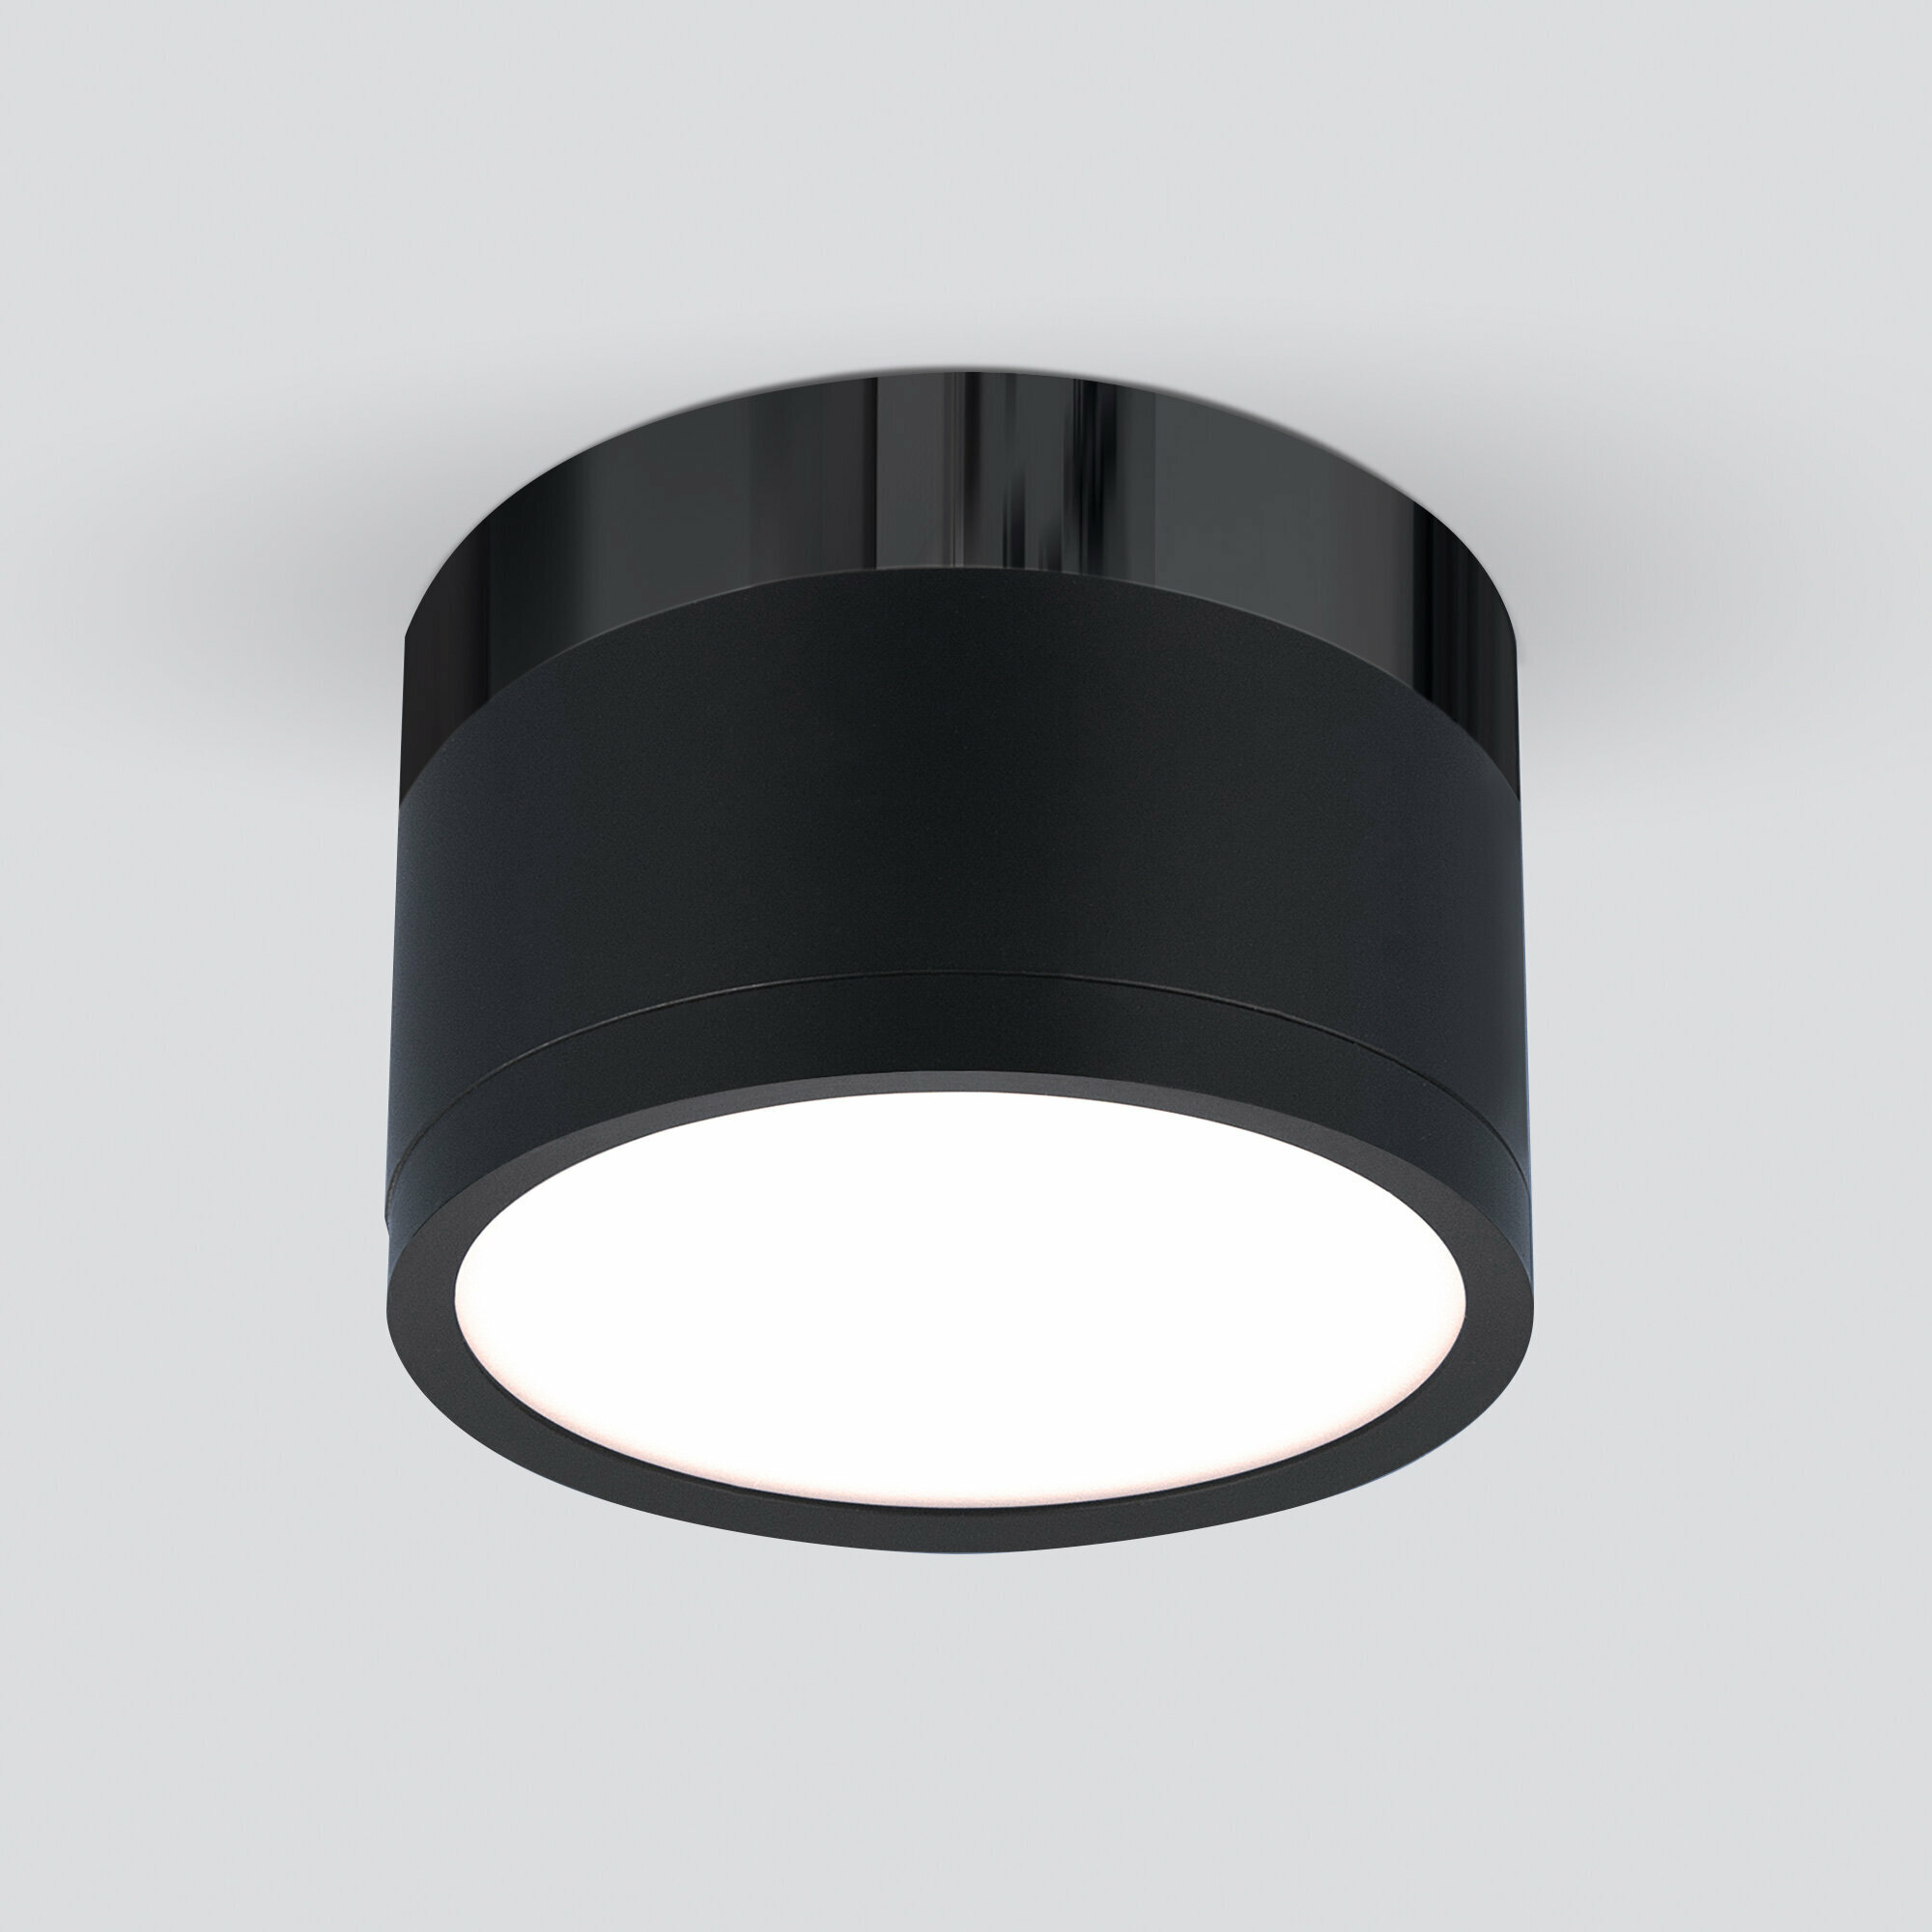 Спот / Накладной потолочный светодиодный светильник Elektrostandard DLR029 10W 4200K черный матовый/черный хром